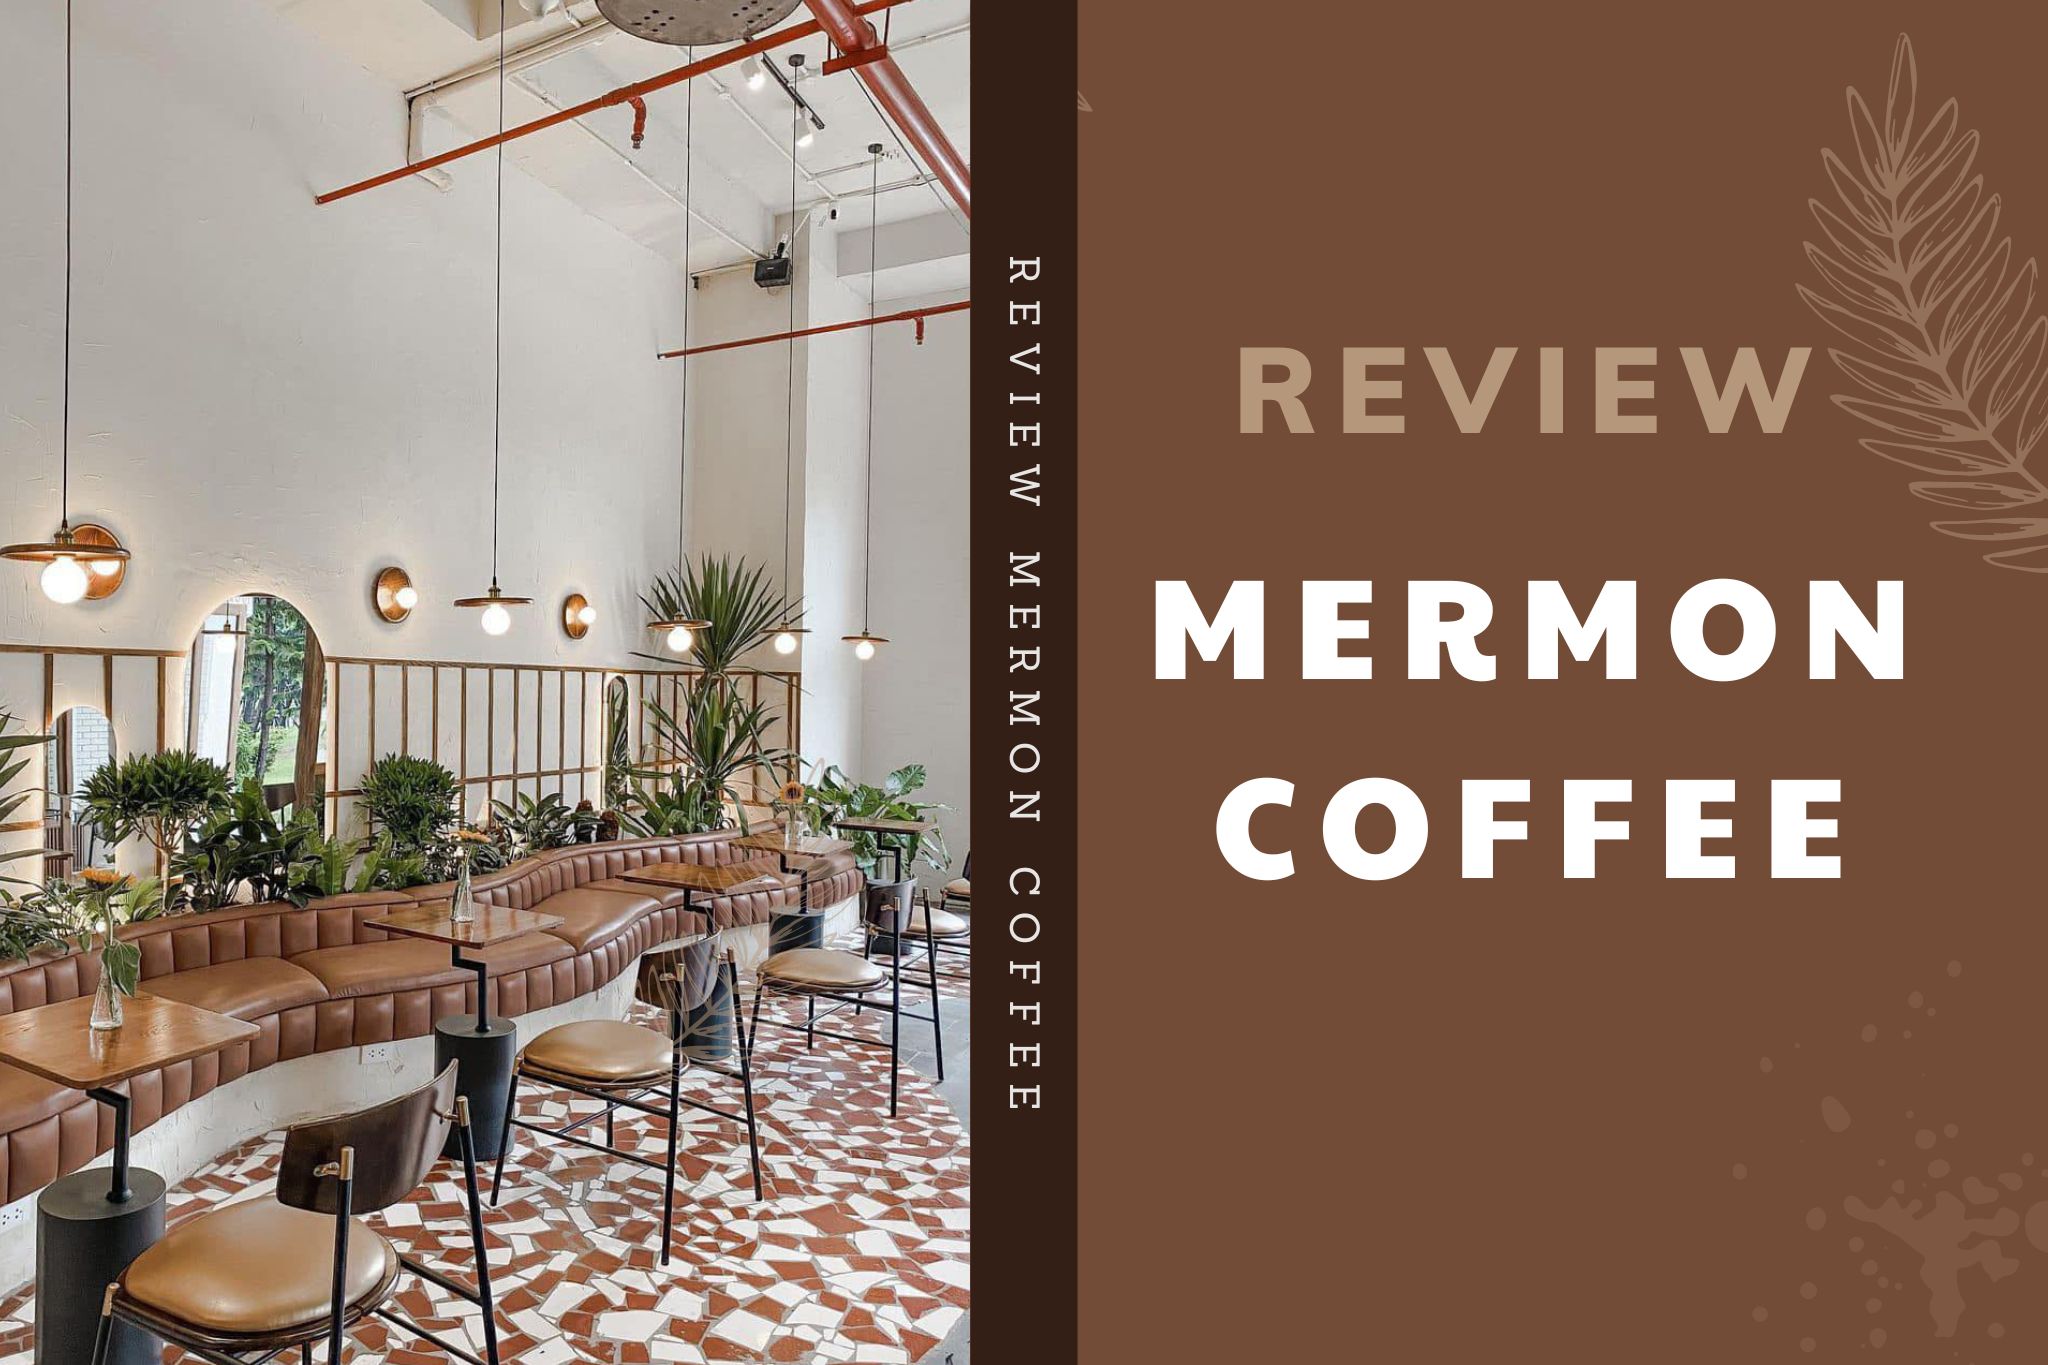 Review Mermon Coffee Royal City - Thiết kế hiện đại đậm chất "minimalism"